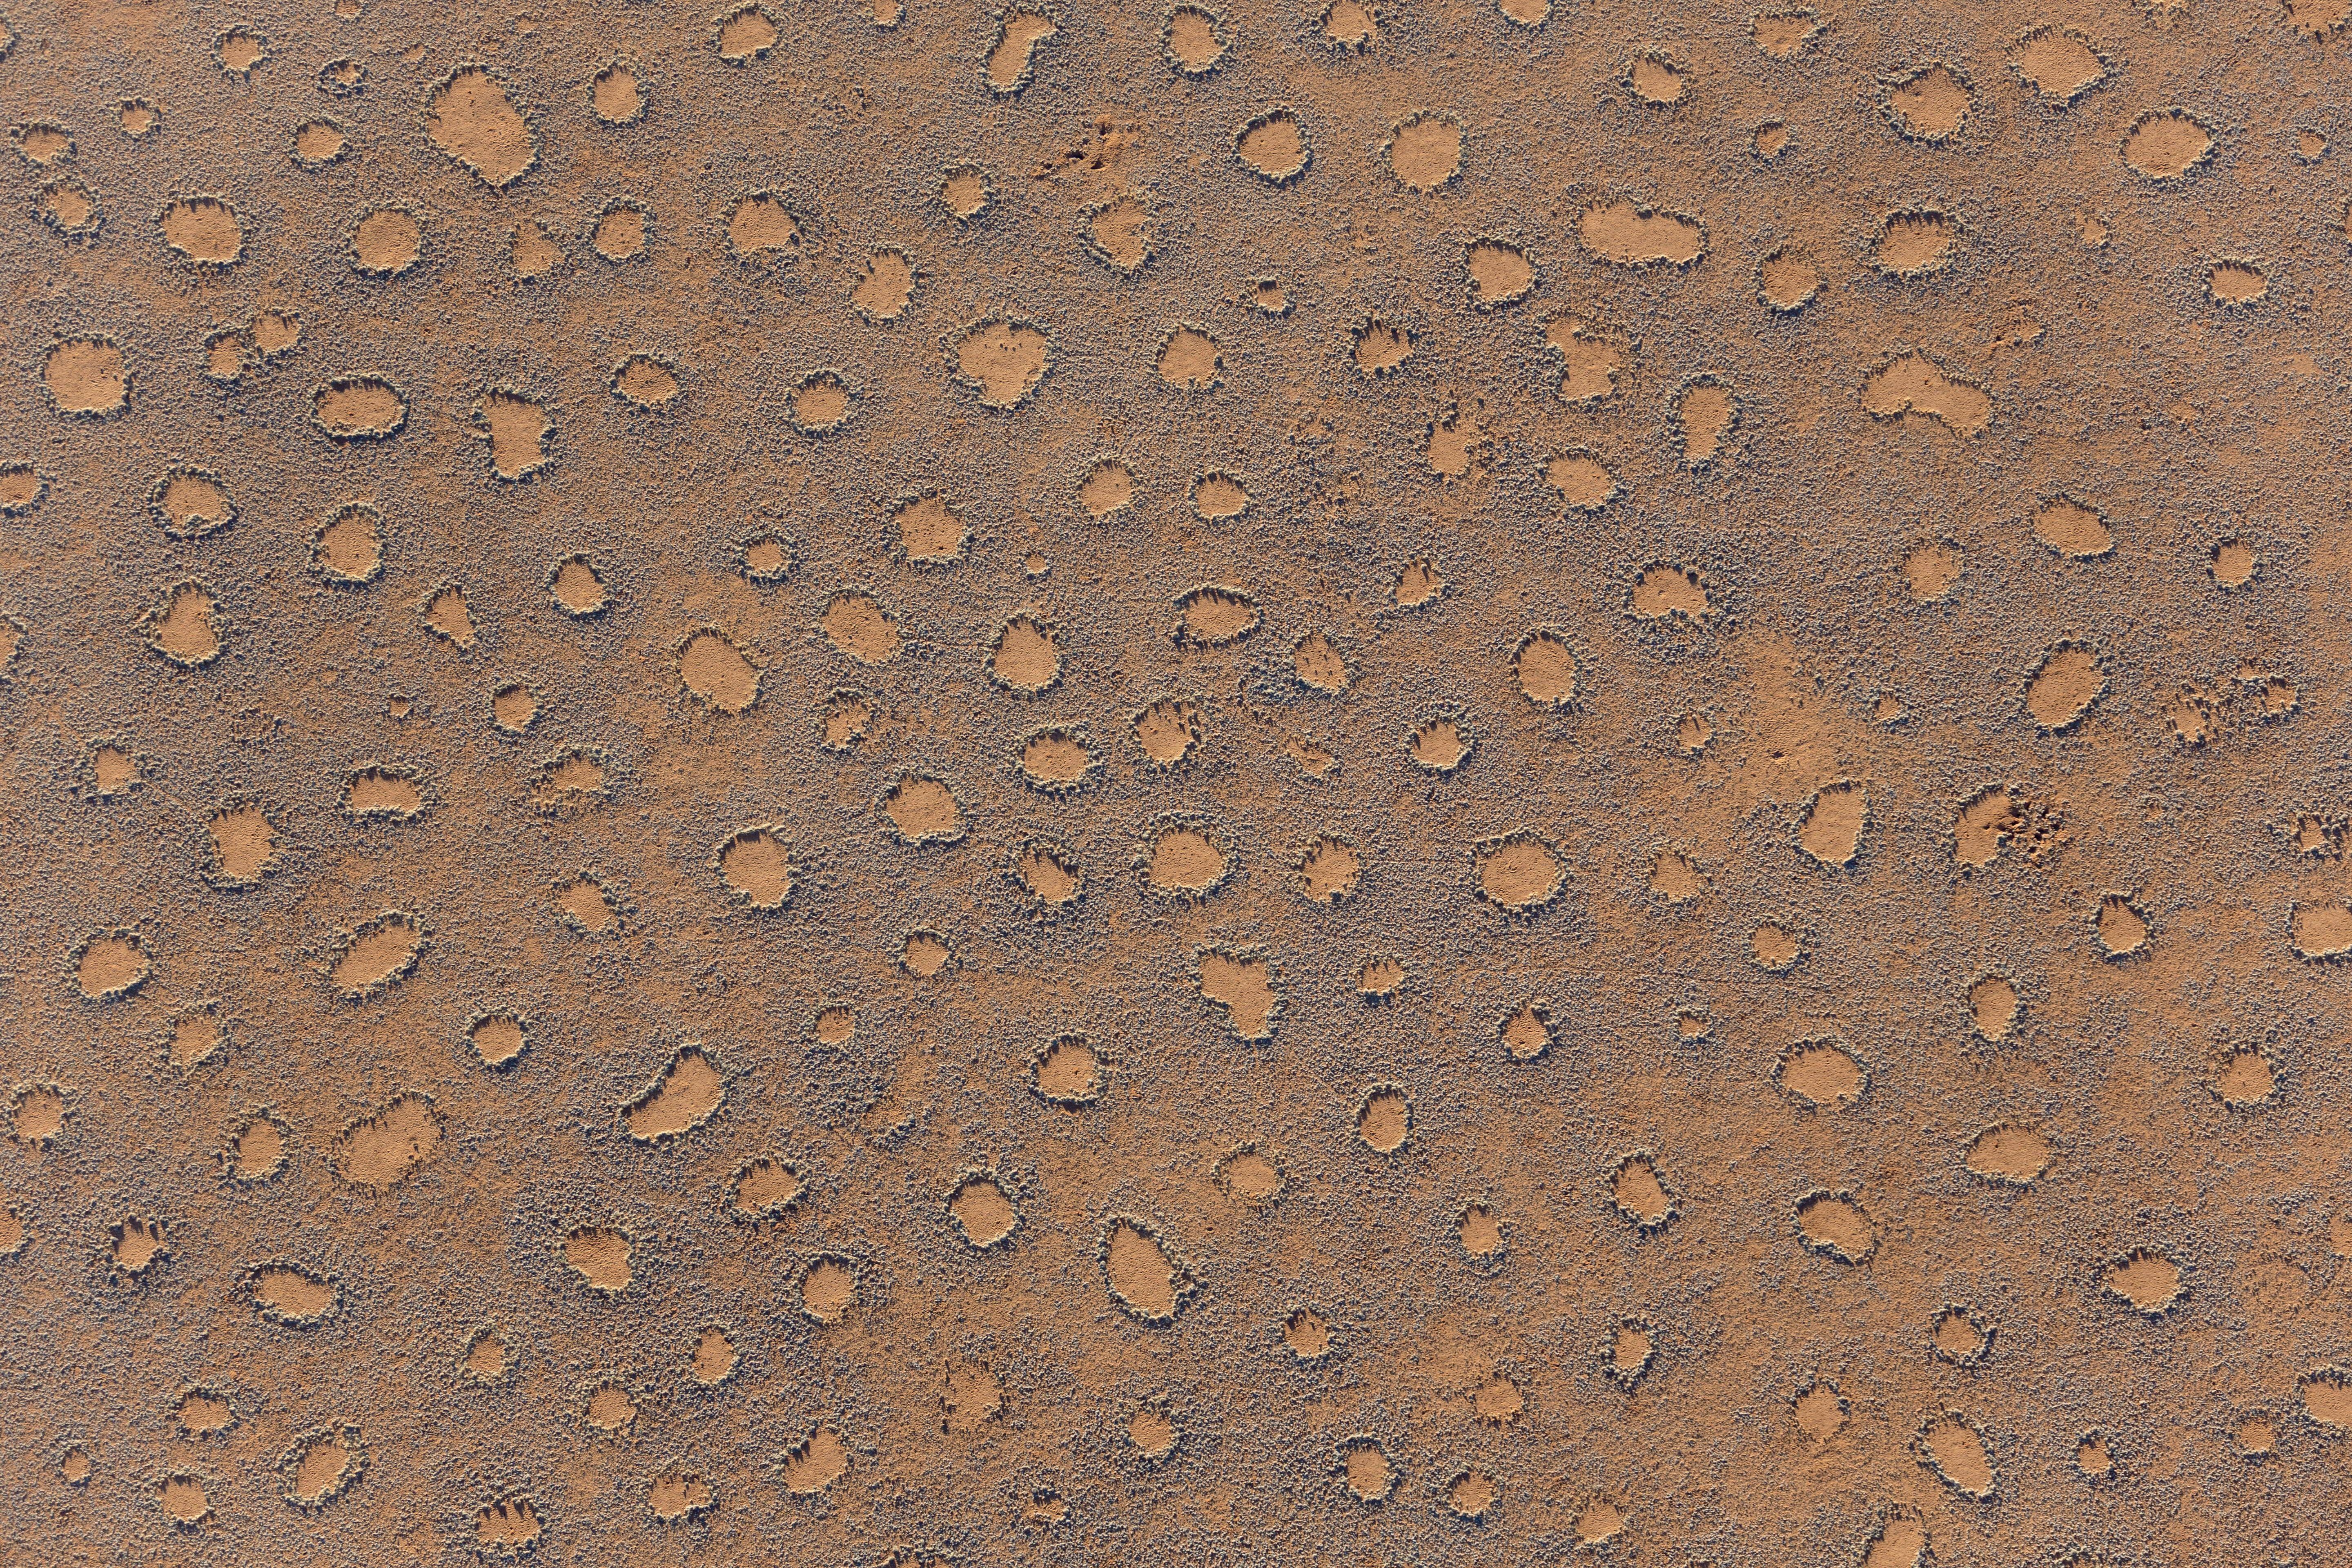 So viele! Aus der Luft betrachtet zeigt sich, wie zahlreich Feenkreise in der Namib vorkommen.